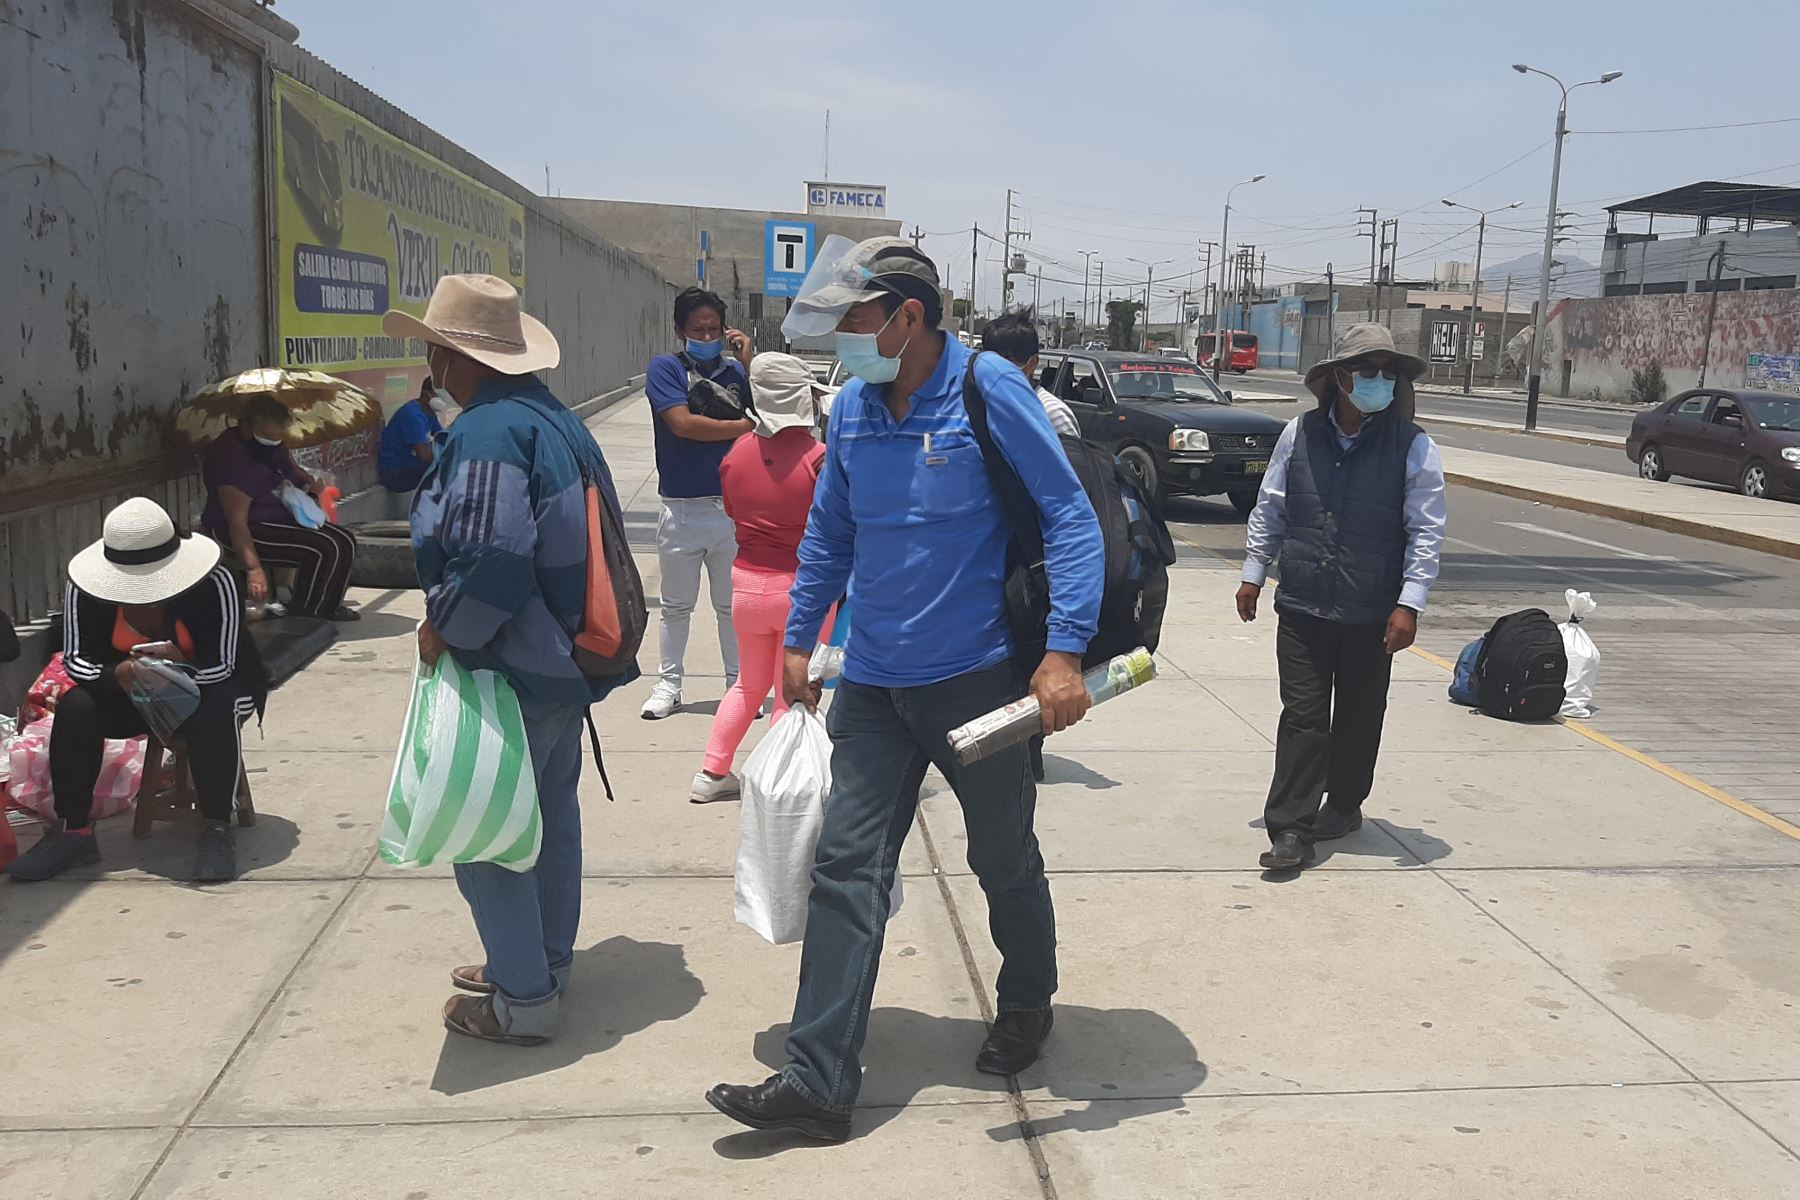 Muchas agencias de transporte interprovincial han informado que se han agotado los pasajes a Lima hasta nuevo aviso. Foto: ANDINA/cortesía Luis Puell.